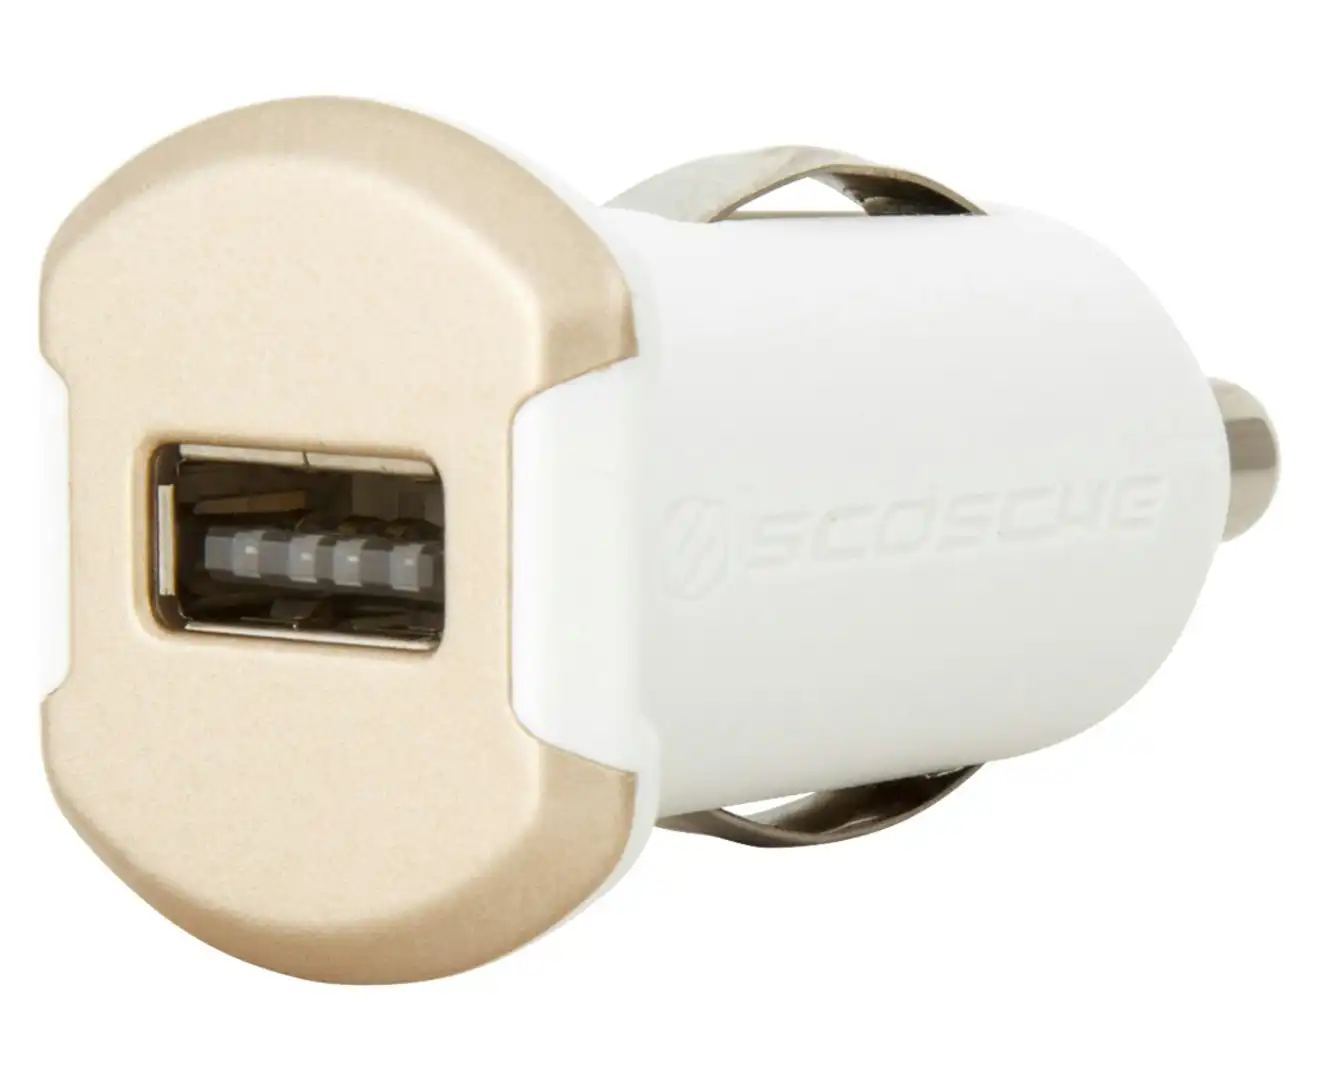 3x Scosche reVOLT 12W 2.1A USB Car Charger/Fast Charging f/ Smartphones/Tablets